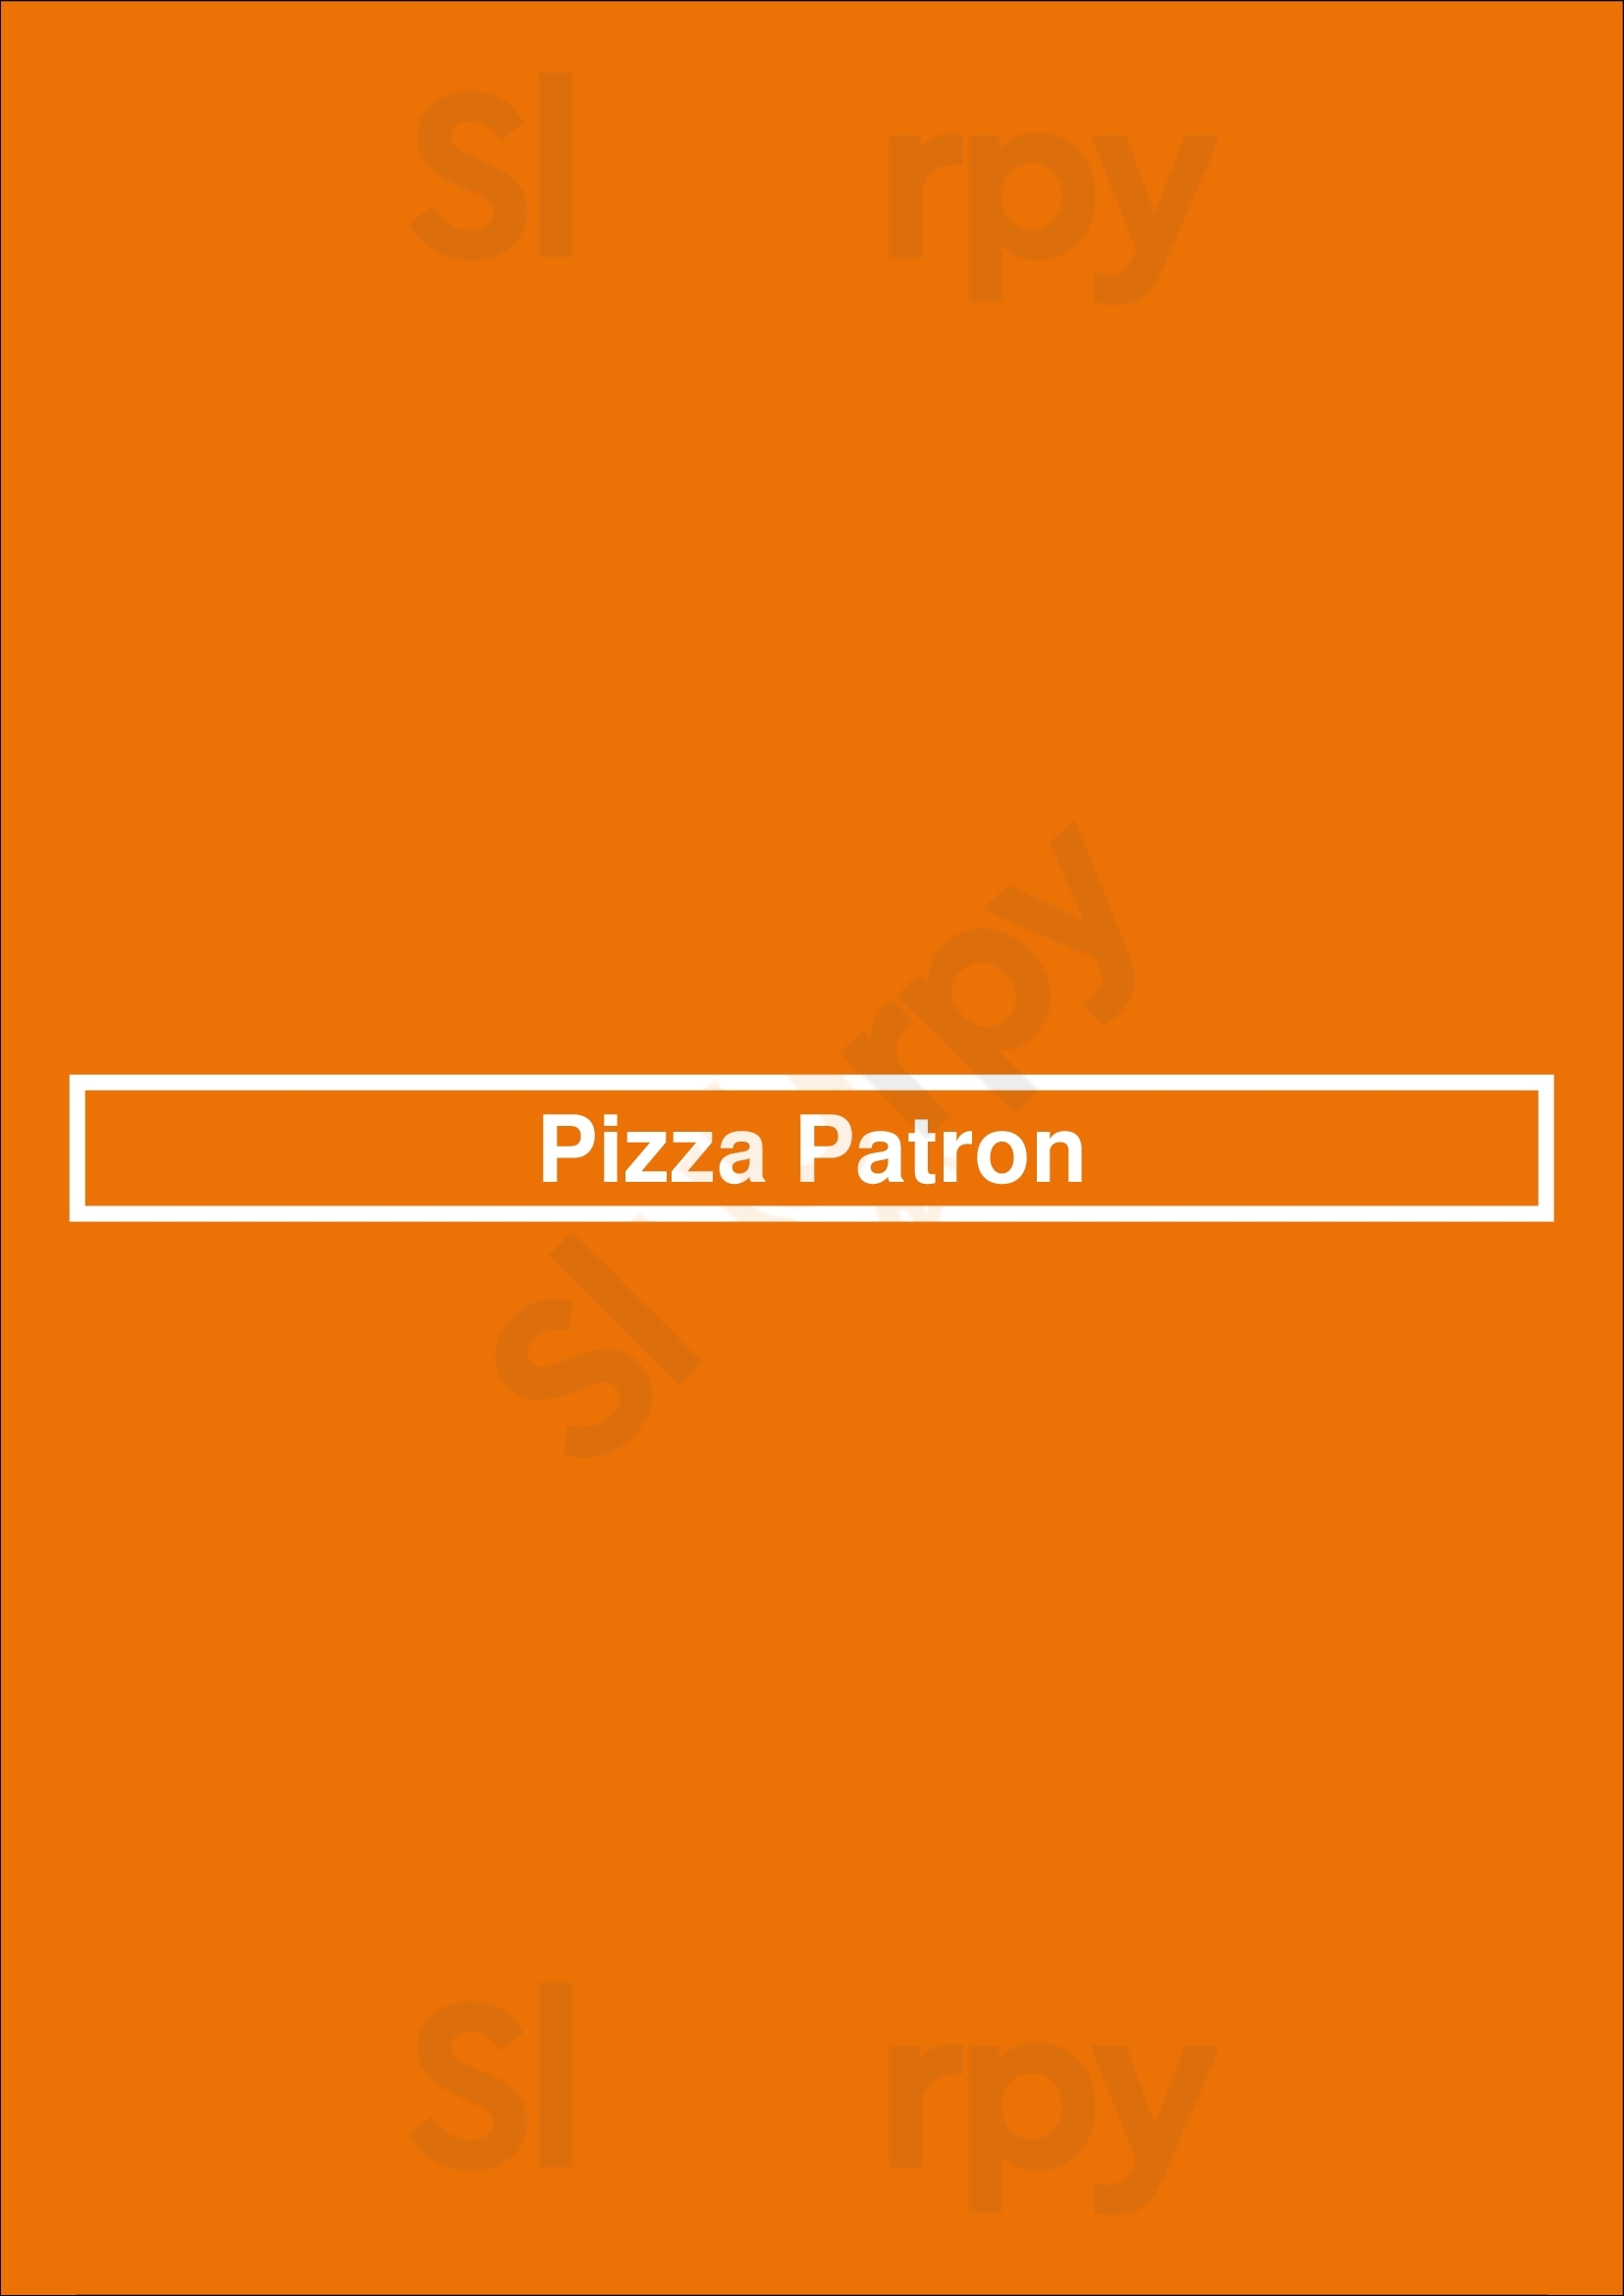 Pizza Patron Dallas Menu - 1